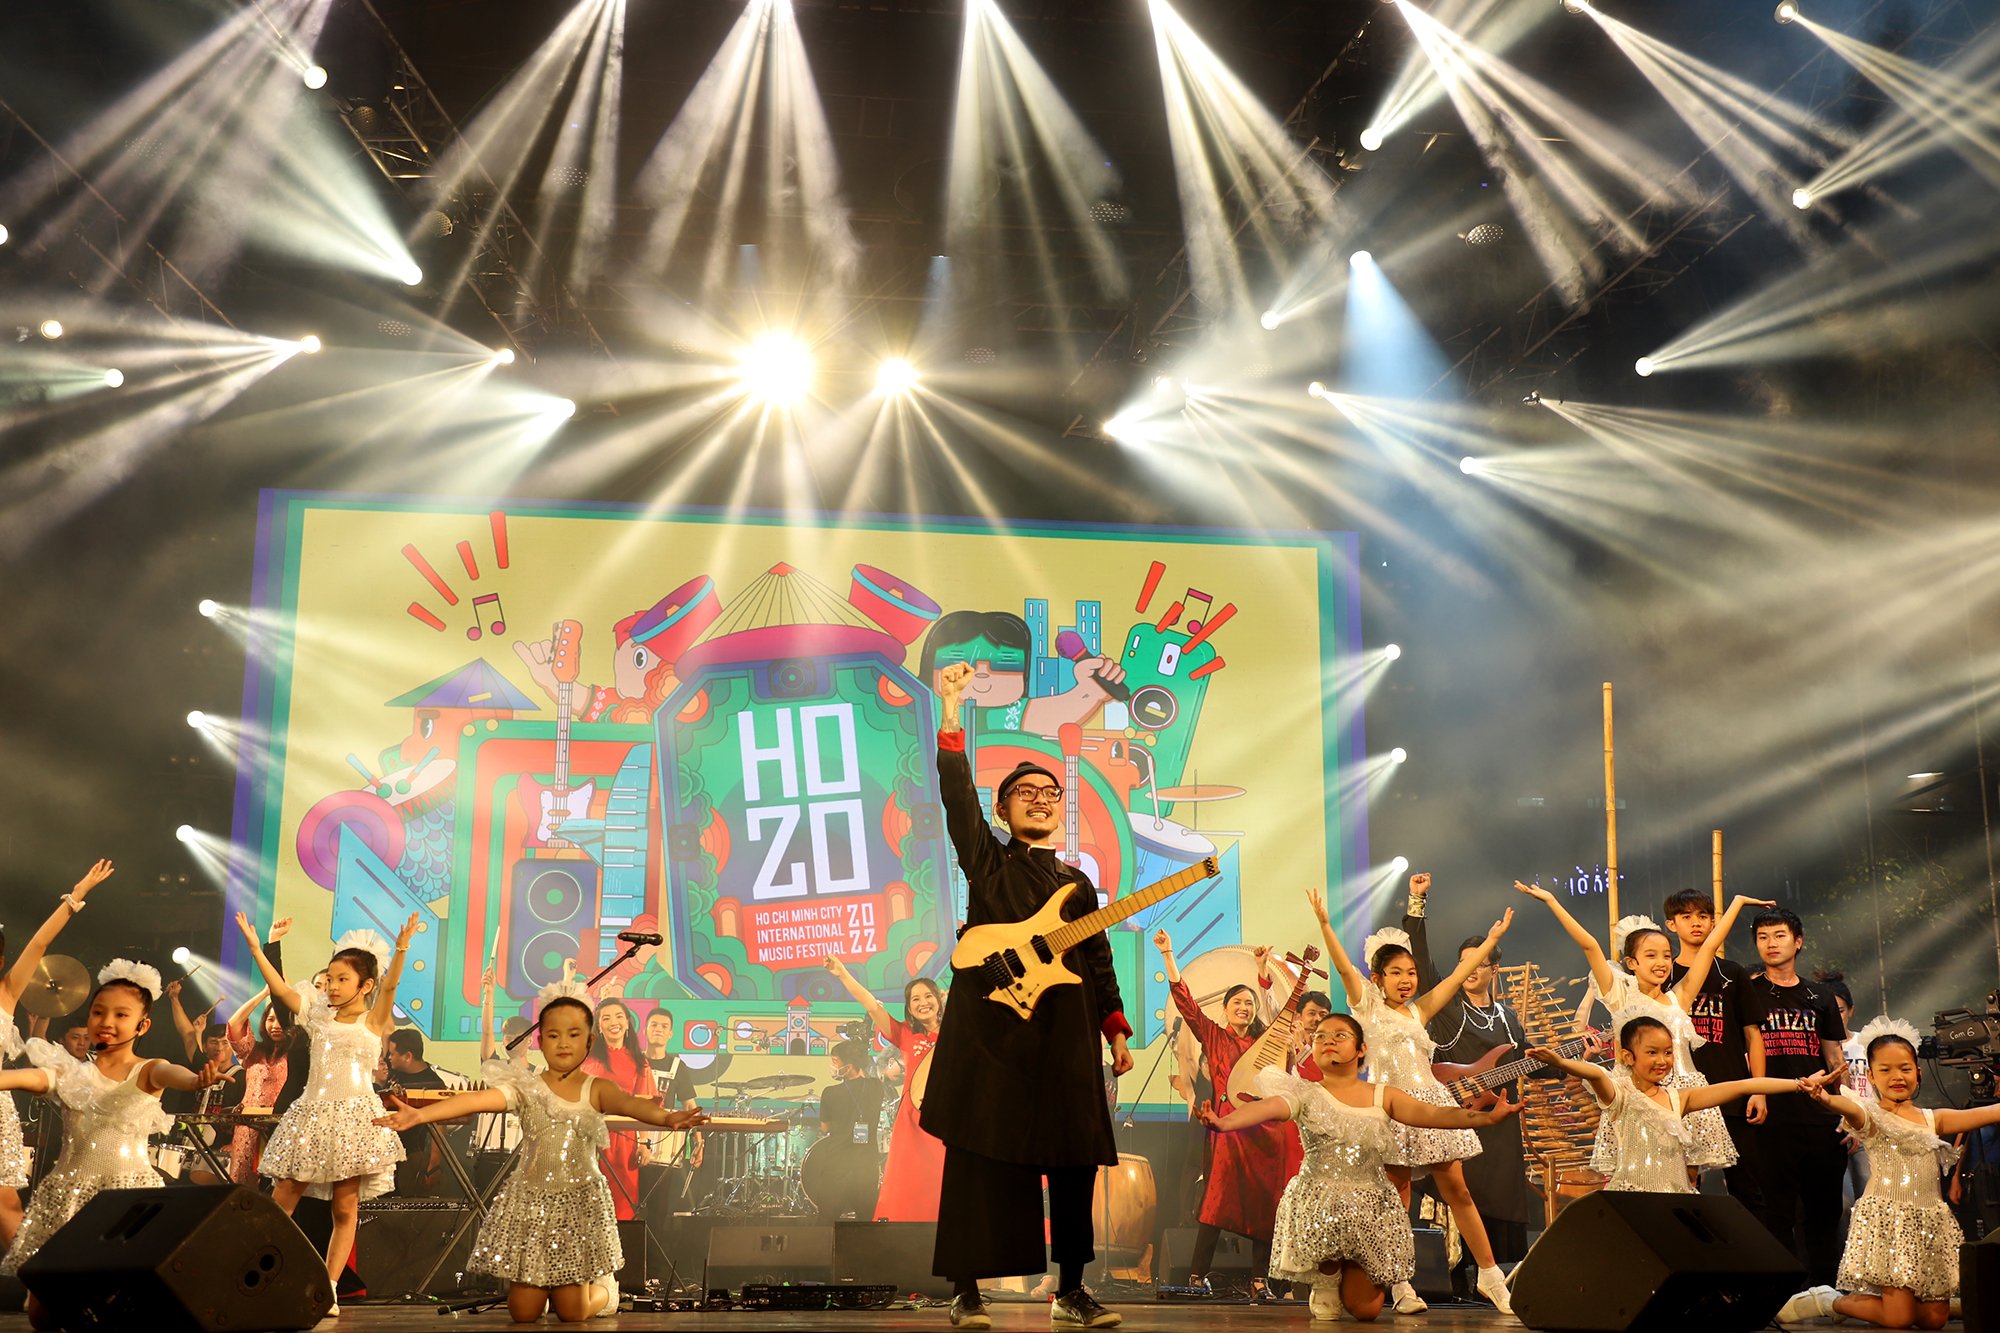 Tối 9/12, Lễ hội Âm nhạc quốc tế TP.HCM - Hò dô 2022 đã chính thức khai mạc tại phố đi bộ Nguyễn Huệ, với các màn trình diễn bùng nổ của các nghệ sĩ trong và ngoài nước.